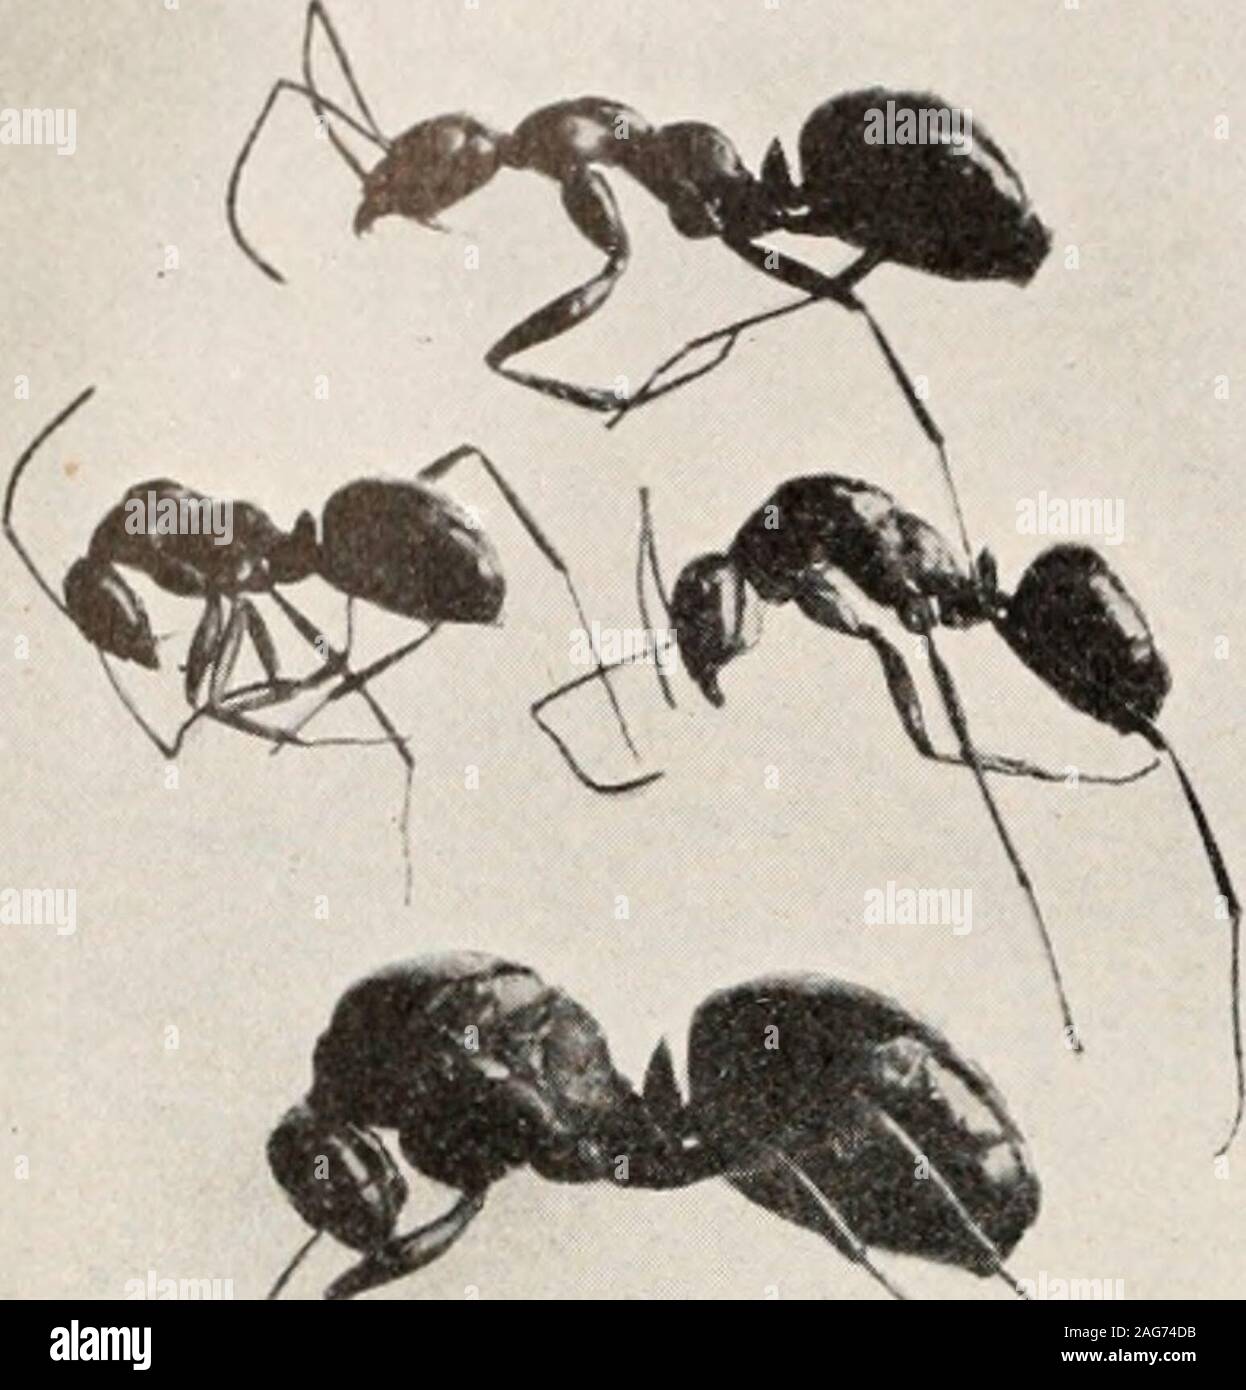 . Les fourmis ; leur structure, le développement et le comportement. FIG. 241. Xenodusa cava. (Original.) ,j.oG FOURMIS.. abdomen vbicb sont léchés par l'hôte avec une évidente satisfaction. Notonly ces coléoptères ne vivent eux-mêmes en tant qu'invités parmi les fourmis, mais le même est également vrai de leurs larves. Les larves d'Lomcchusa mclcs-Ate et sont élevés par les fourmis comme leur propre progéniture ; ils sont léchés, fedwith la nourriture régurgitée et avant la nymphose couverts ou intégrées dans des cellules comme leurs propres larves.Lorsque le nid est disturbedthey sont transportés par les fourmis pour inpreference larvaeand à leurs propres nymphes un lieu de sécurité.Le predil Banque D'Images